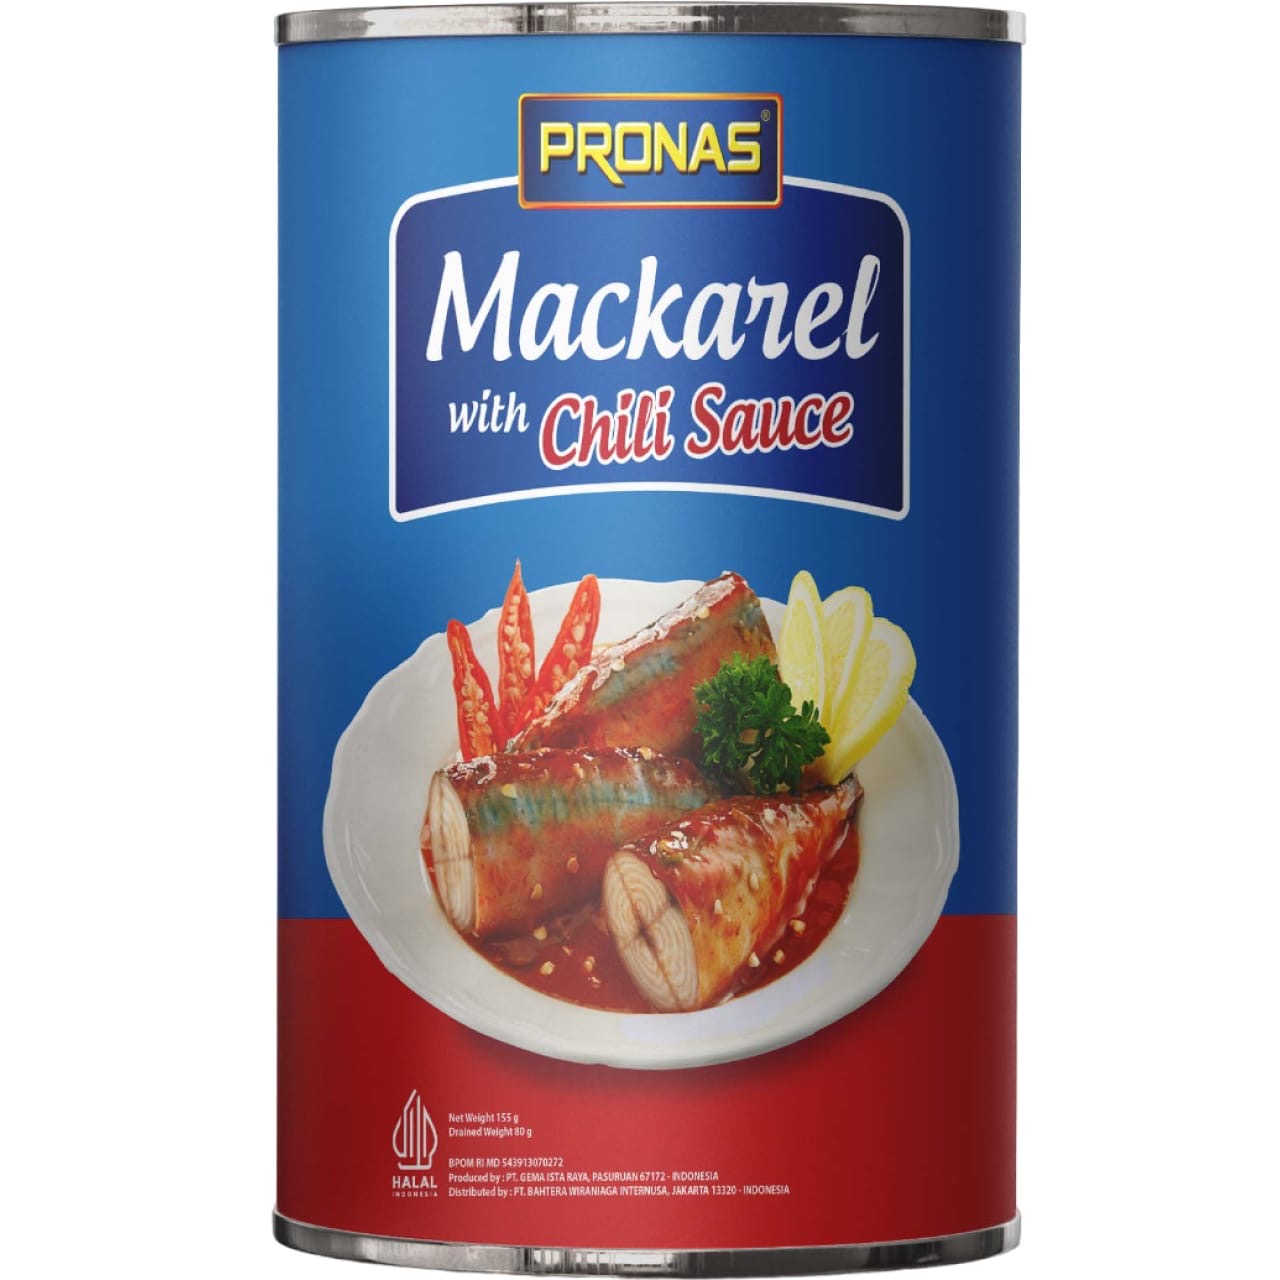 Mackerel Chili Sauce